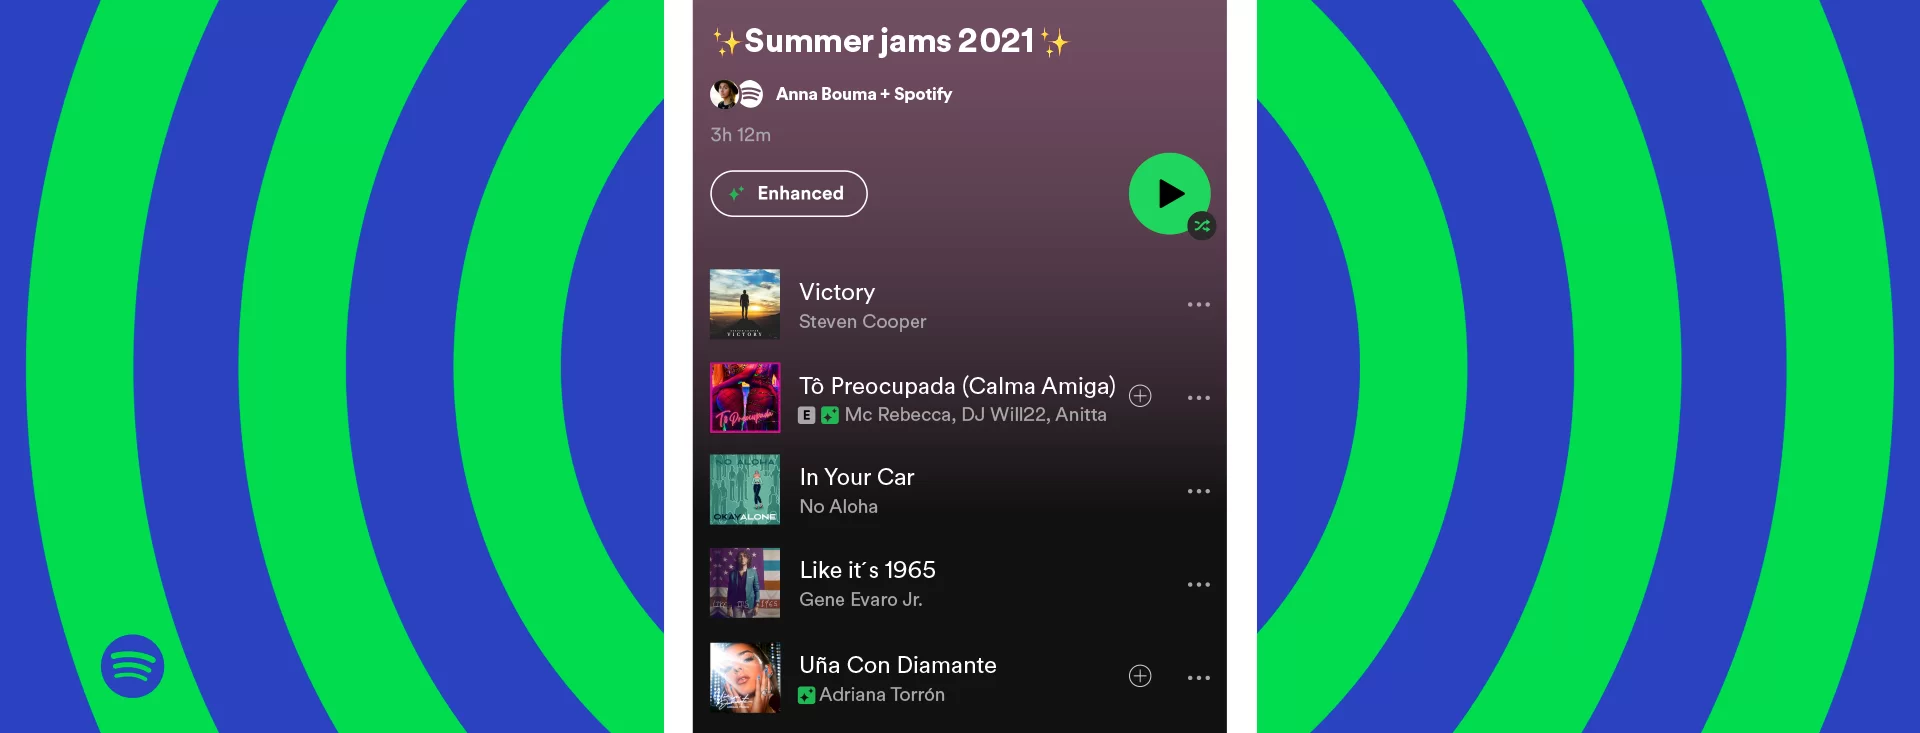 Spotify Kişisel Çalma Listeleri İçin Öneriler Sunuyor